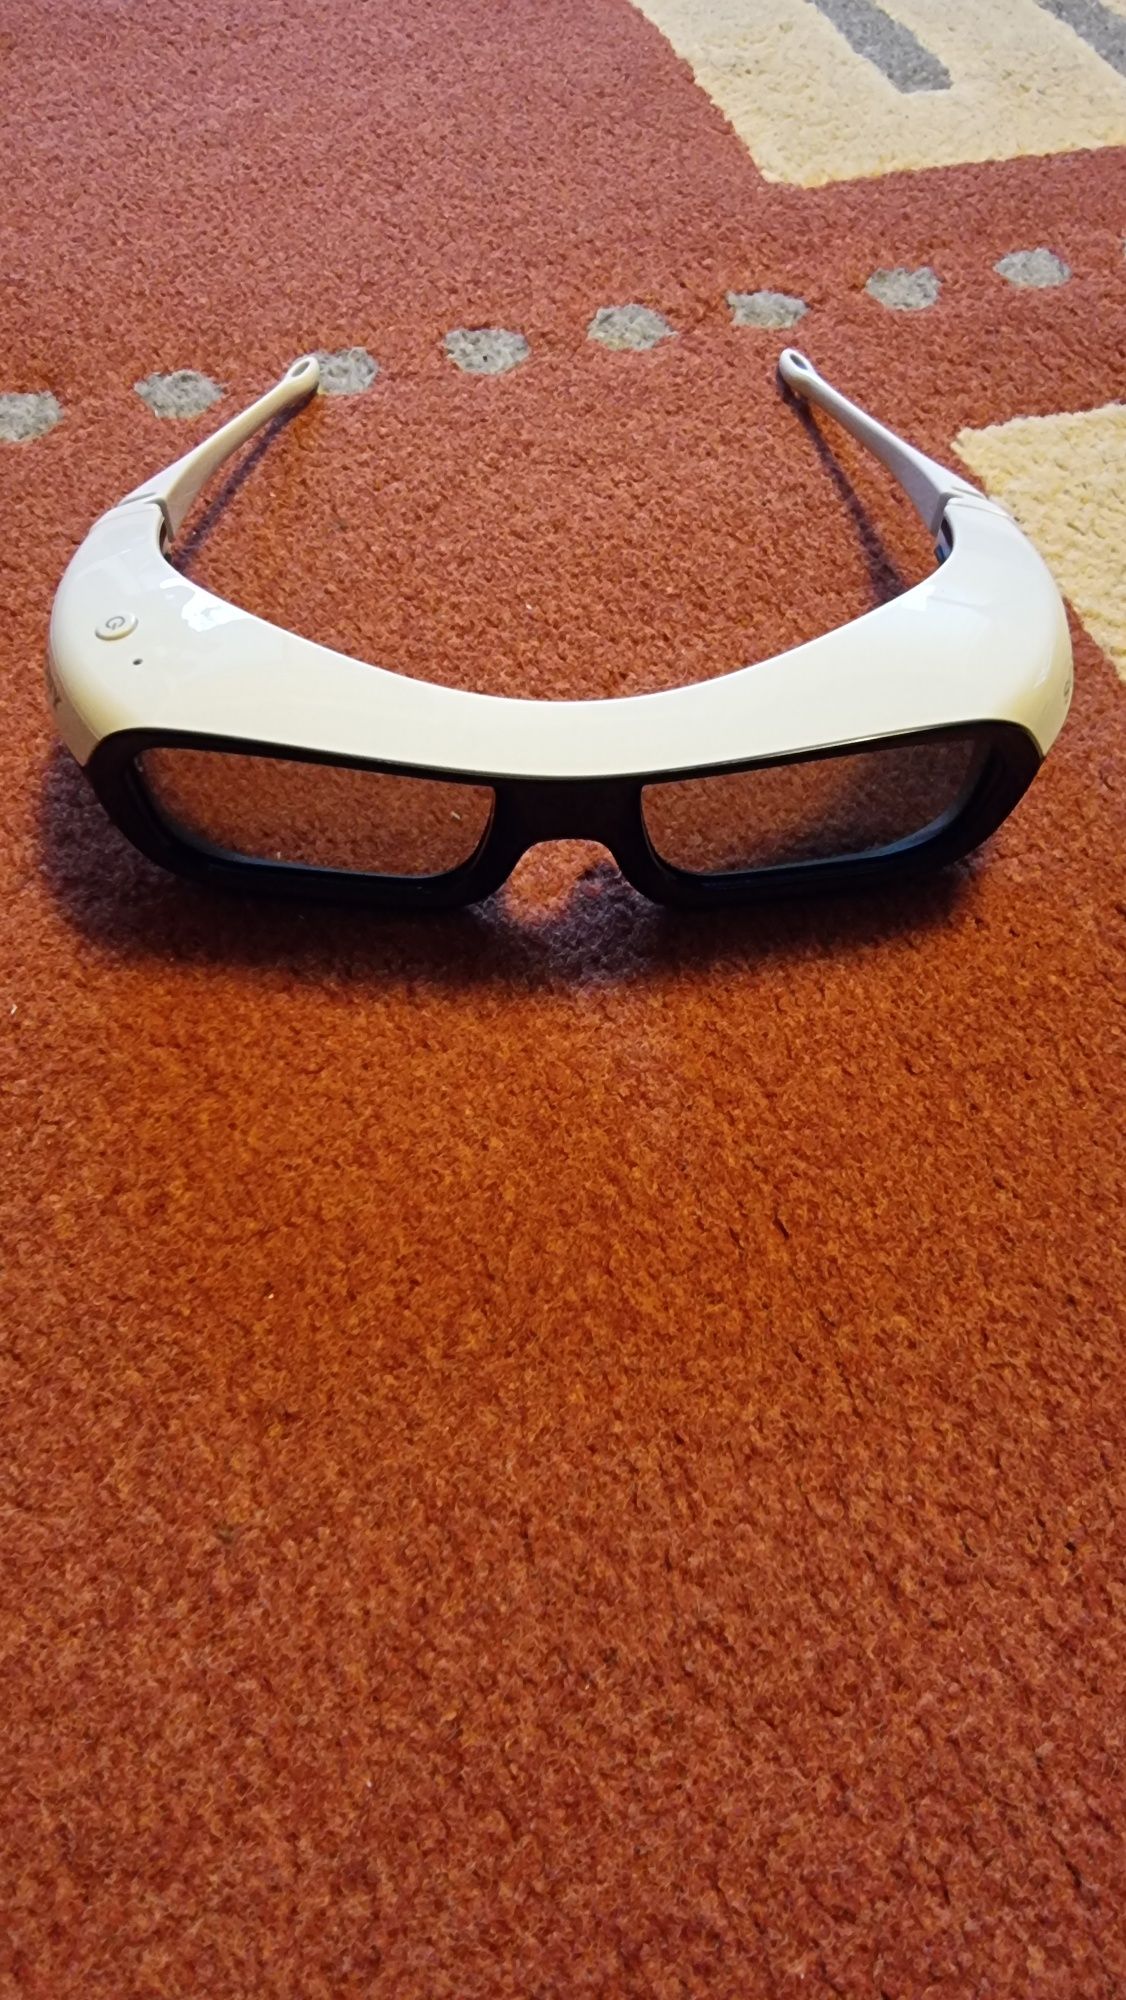 Ochelari 3D Sony pentru vizionare filme tv.. Noi nouti! 3 bucati